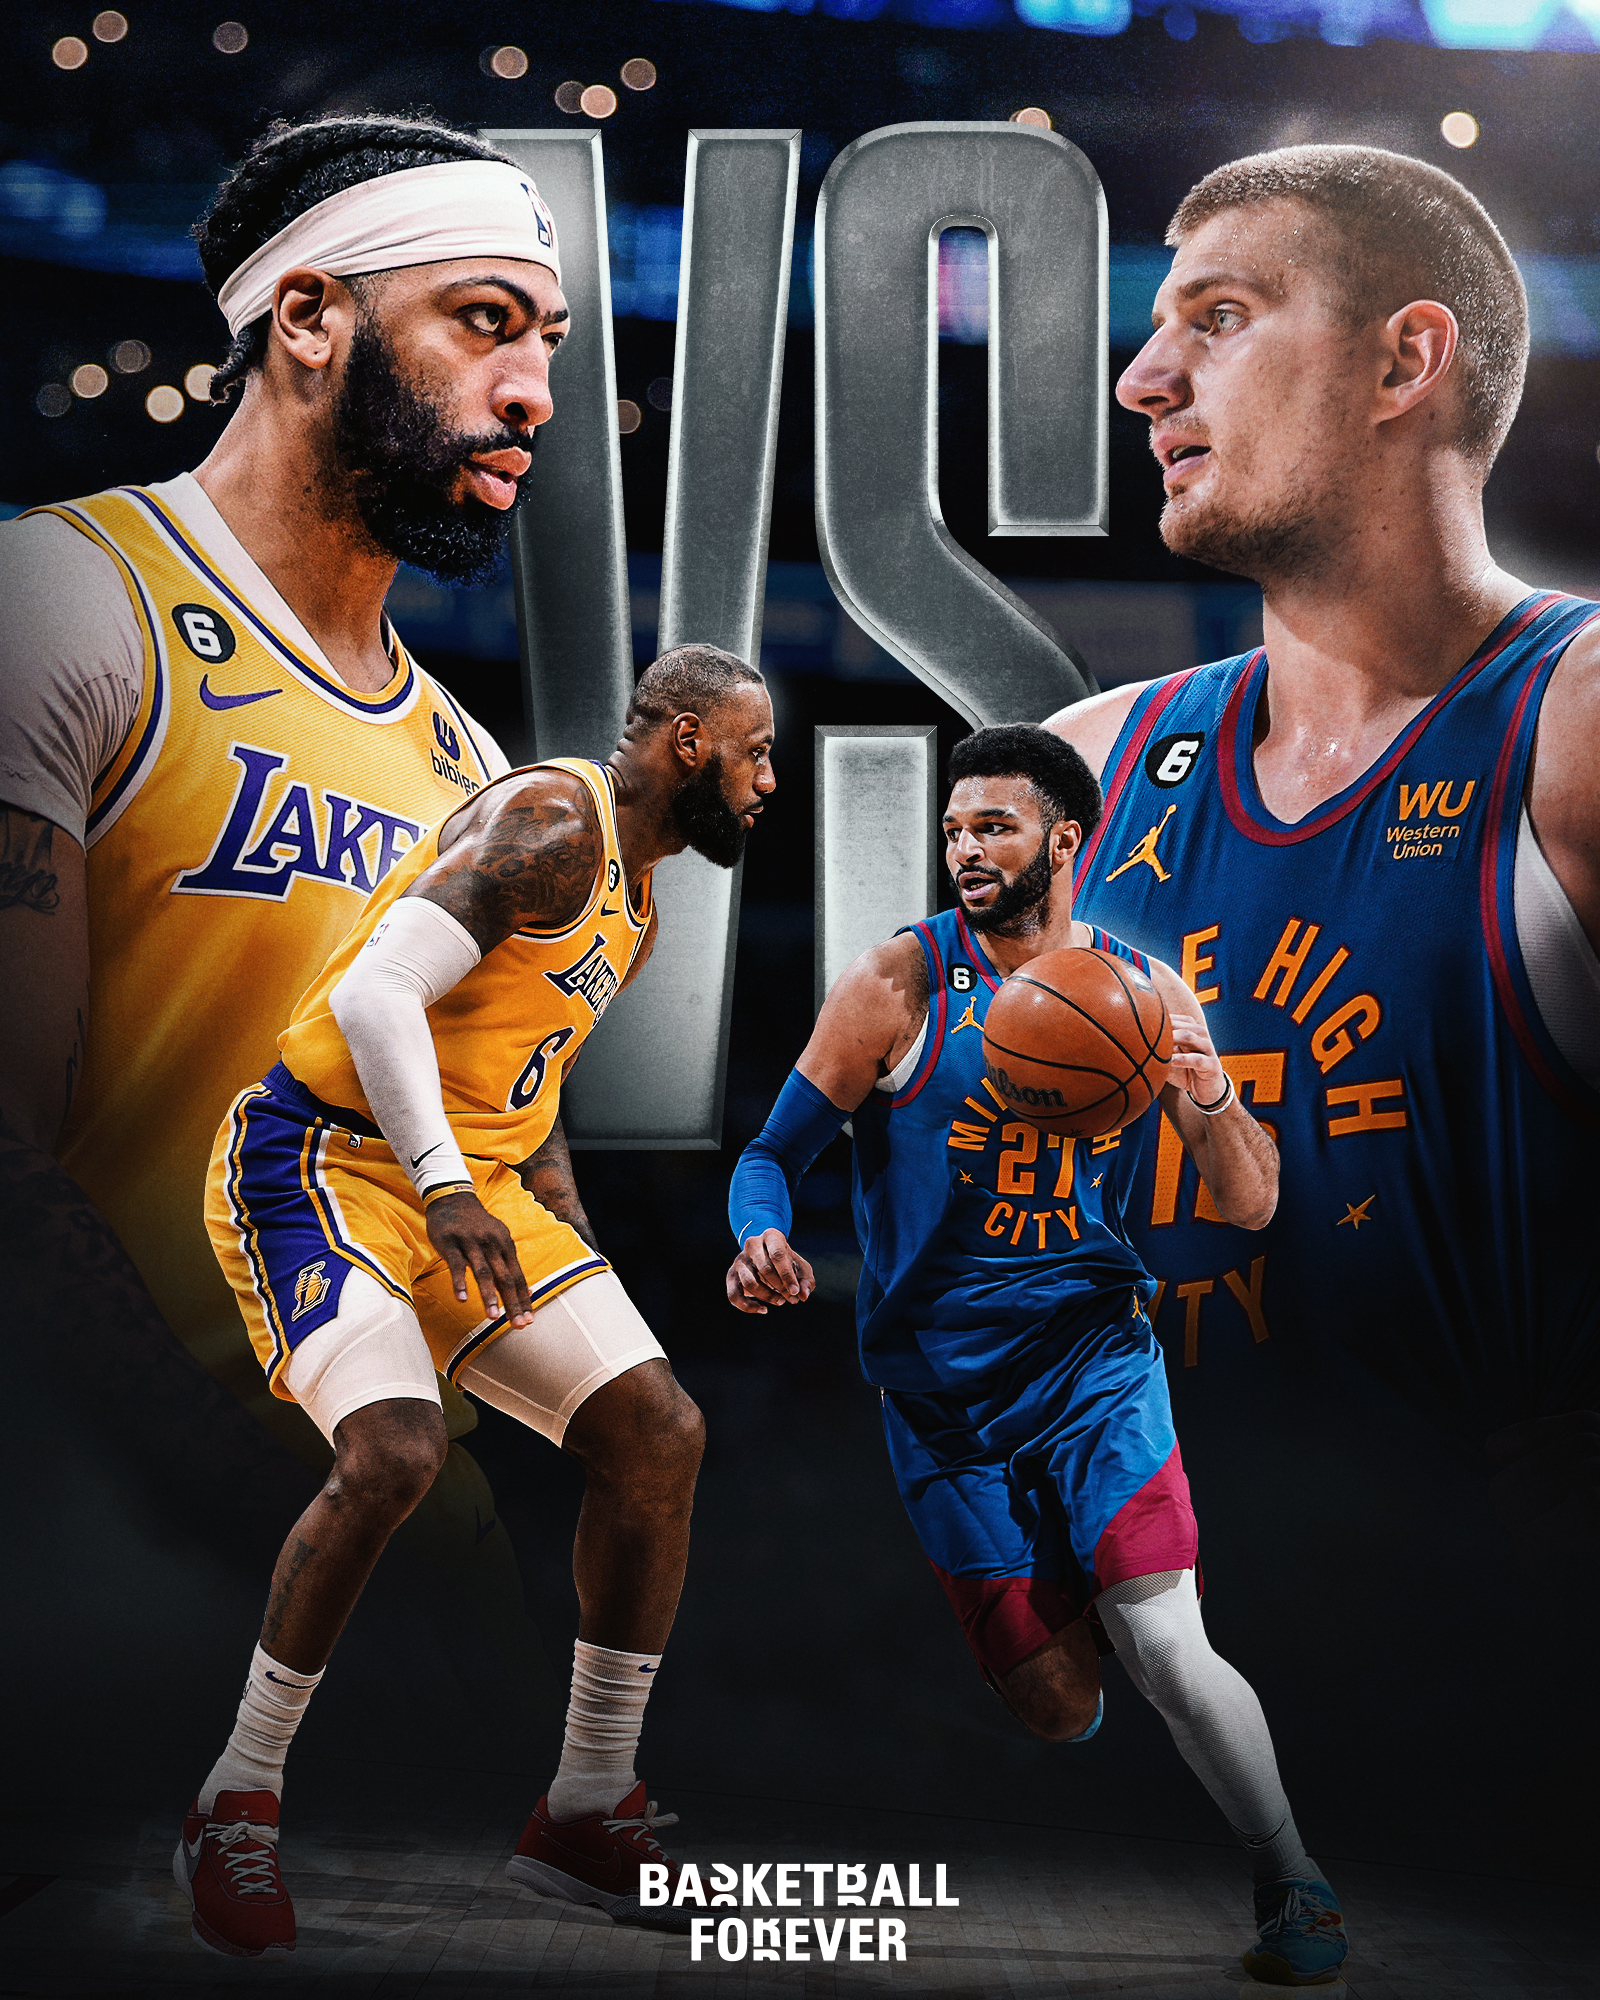 kto体育客户端NBA东西决四支球队出炉 与2019-20赛季完全一致